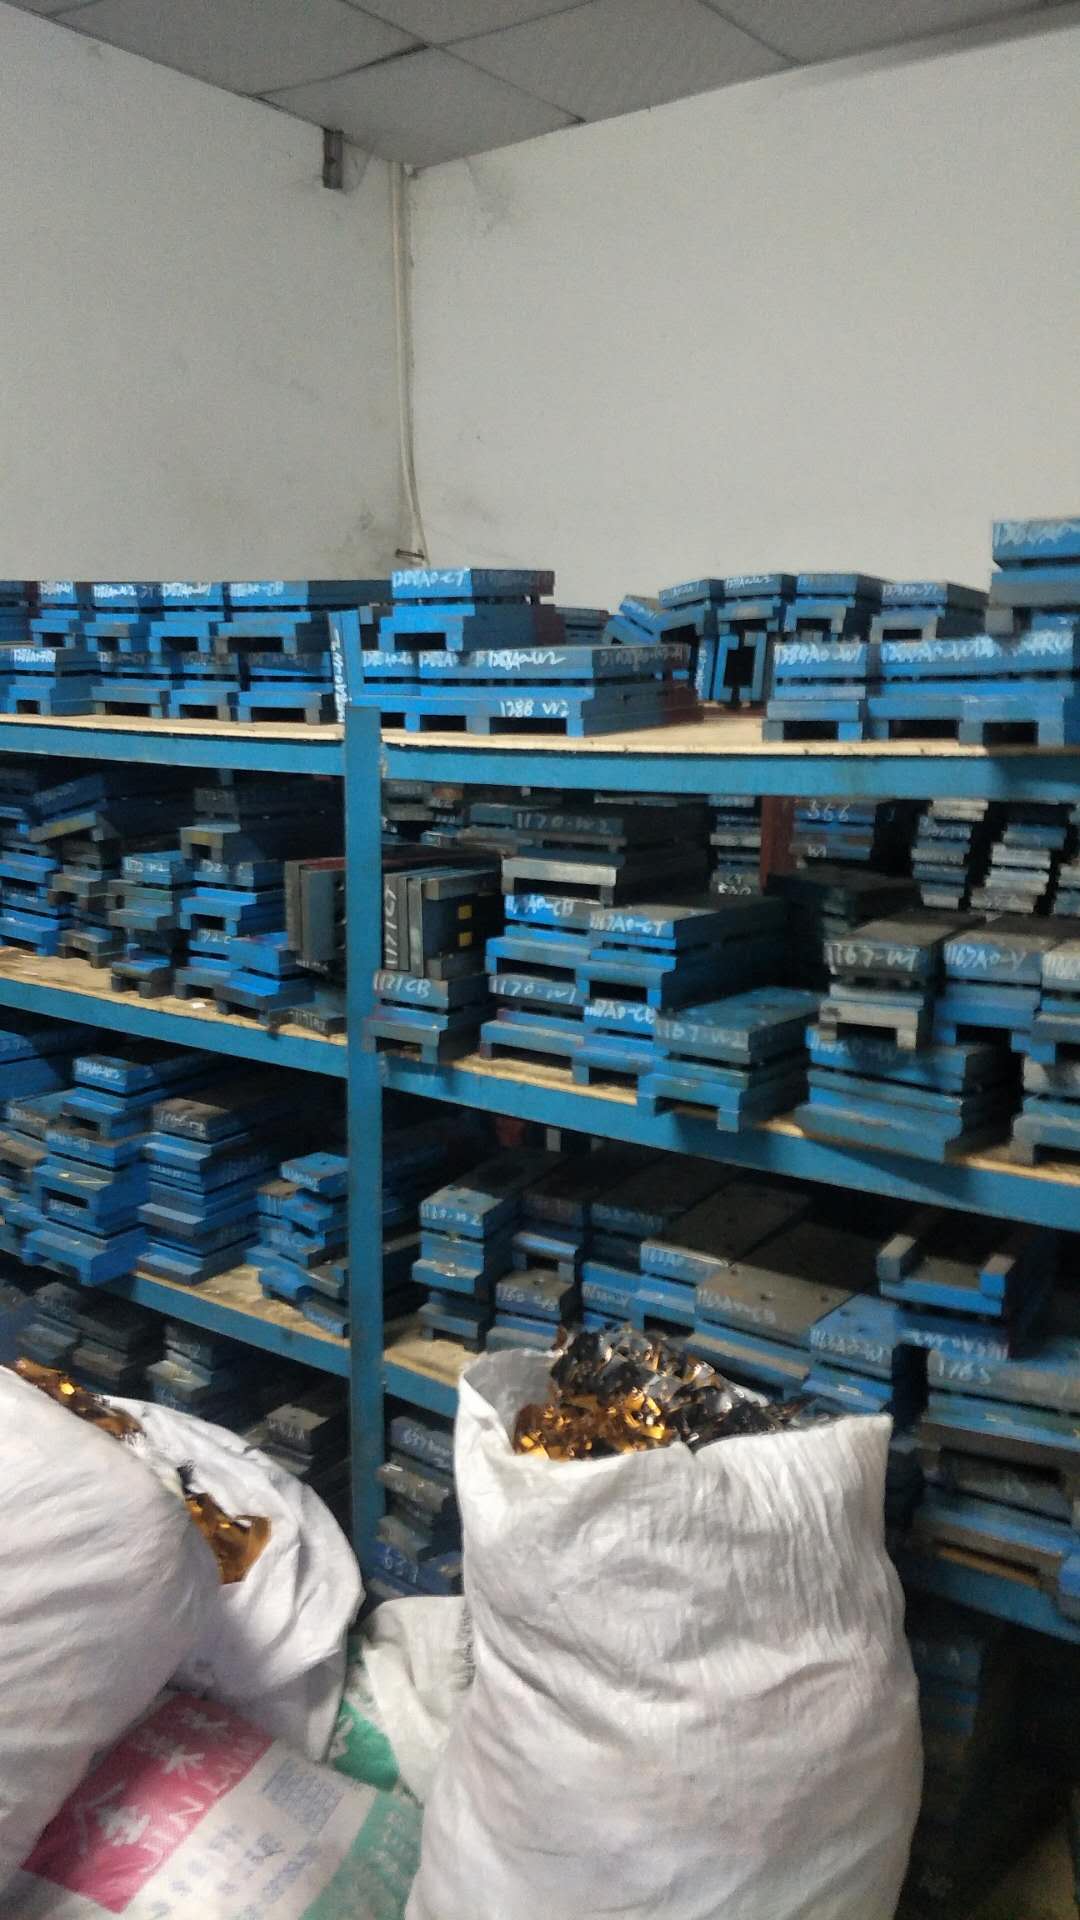 FPC铜纸回收  深圳镀金板回收报价  带lc板回收价格  深圳模具铁回收厂家图片